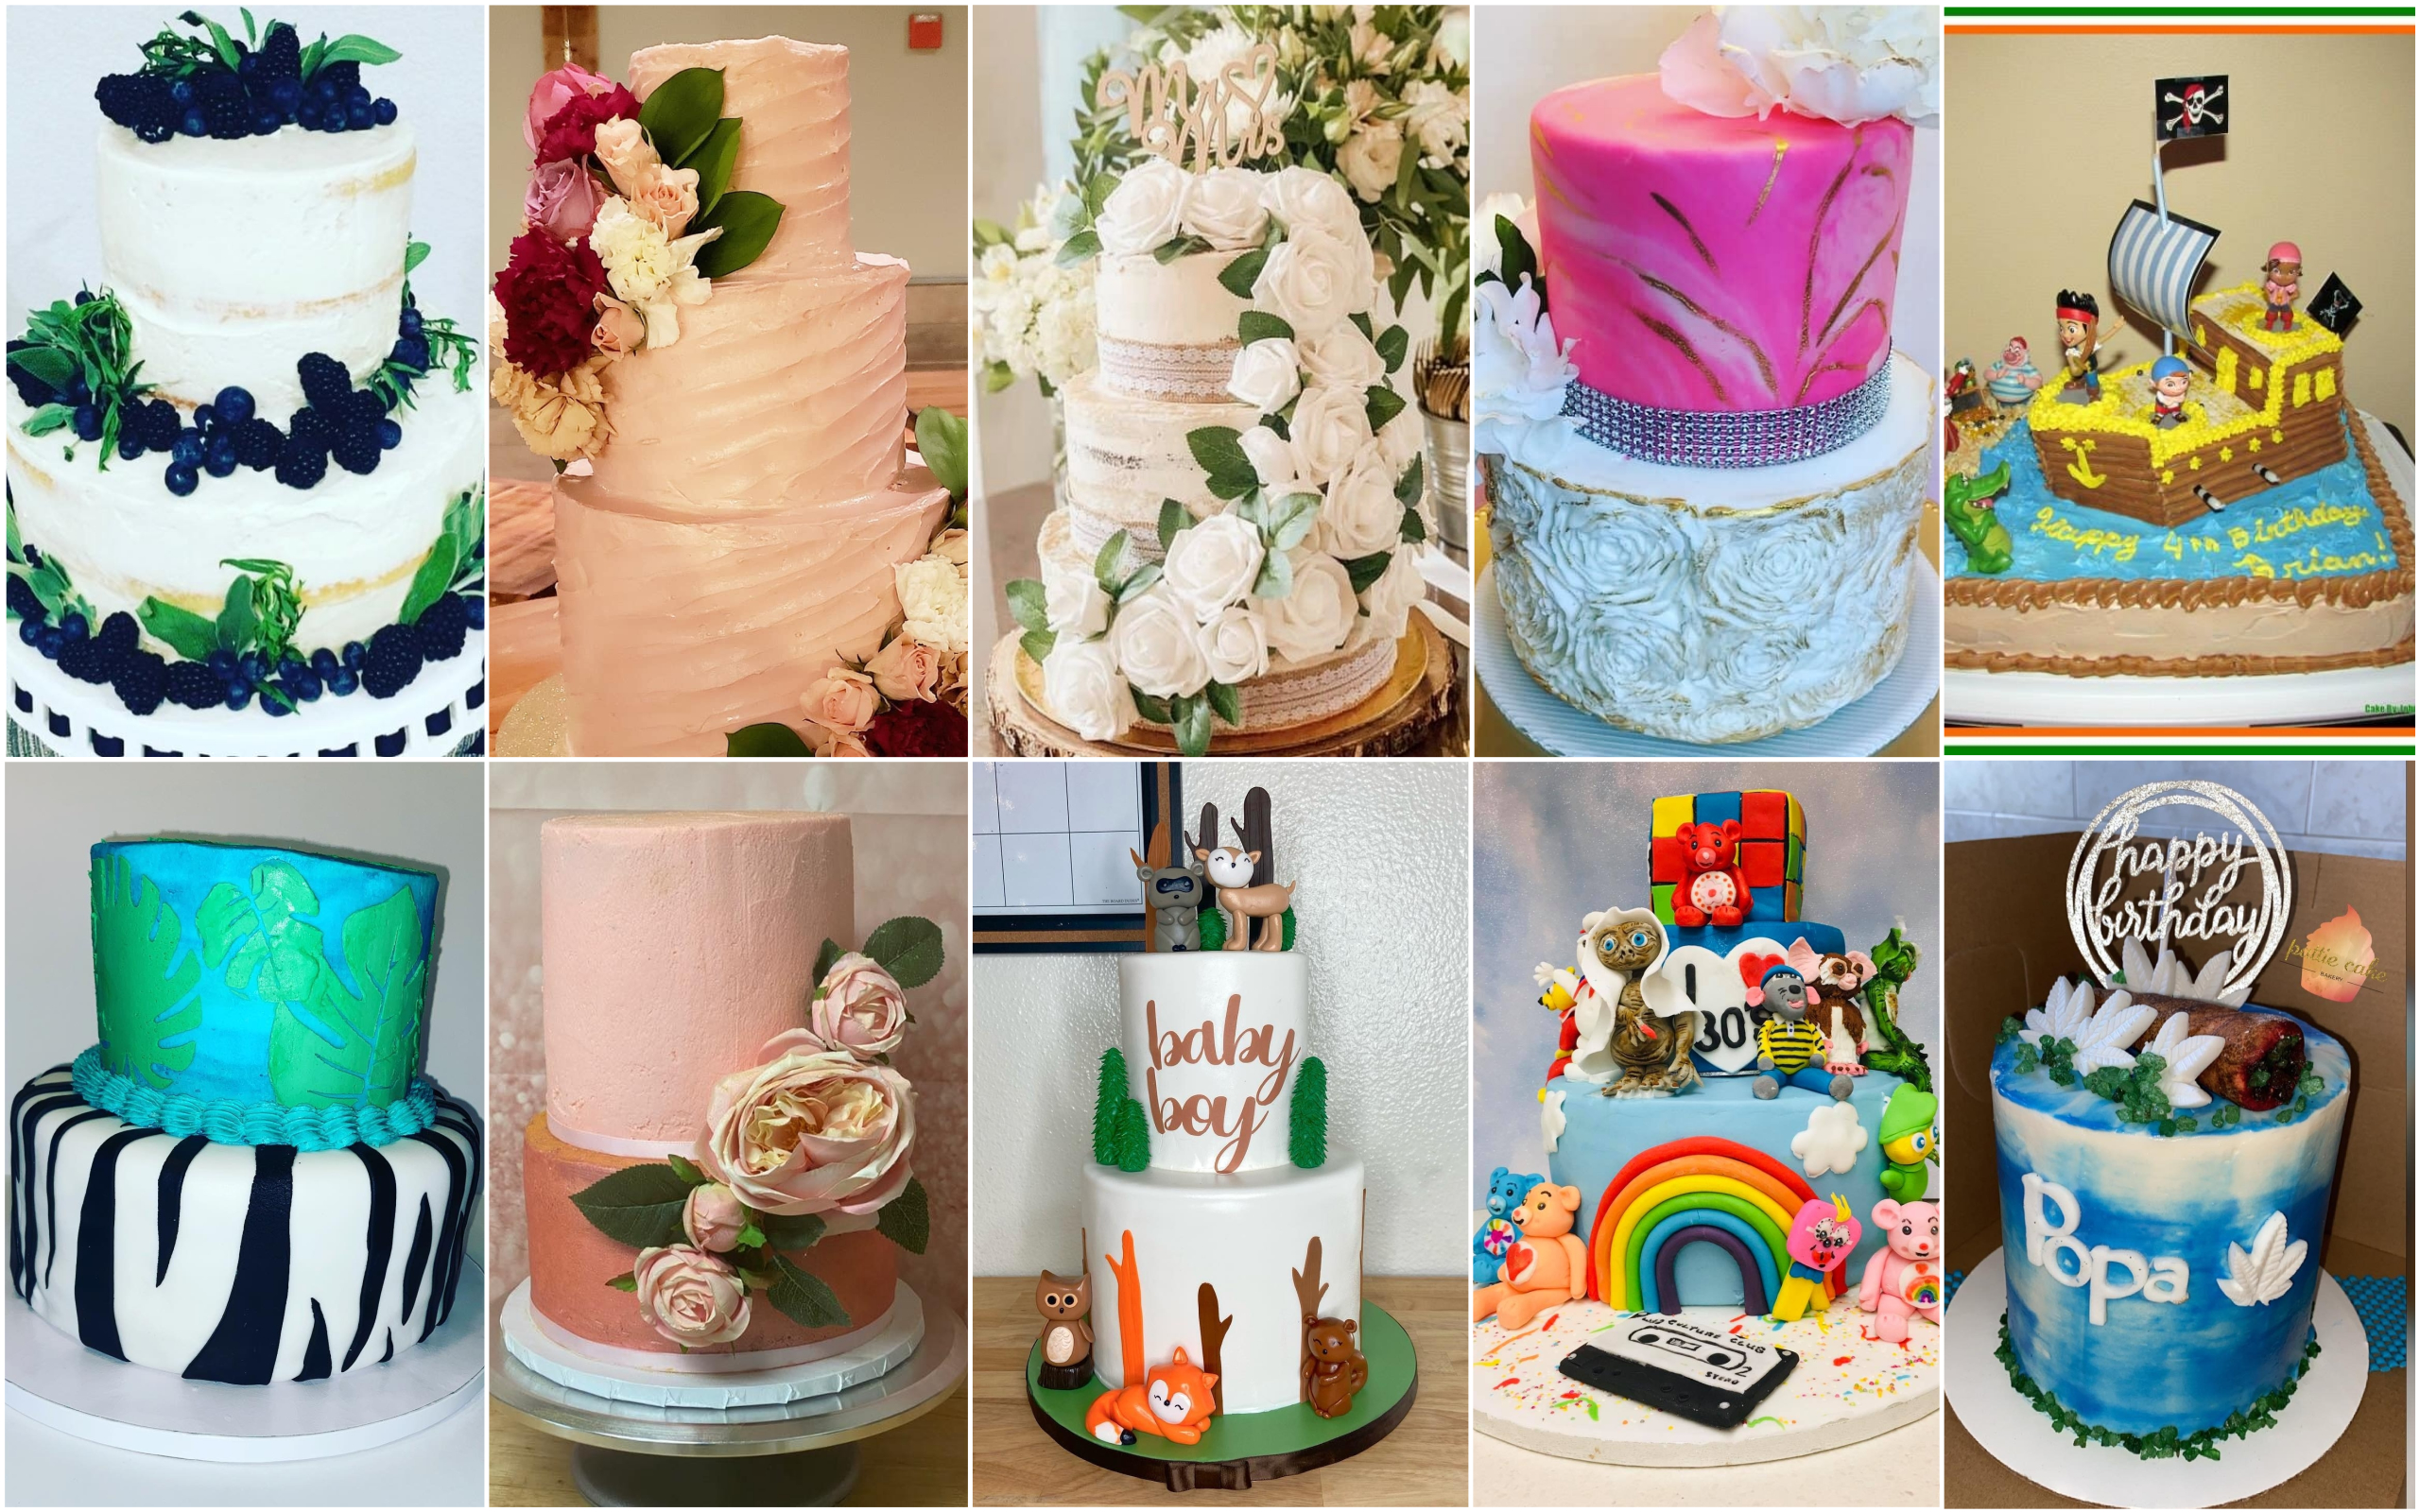 82 Wedding Cake Ideas From Our Dessert Expert Extraordinaire